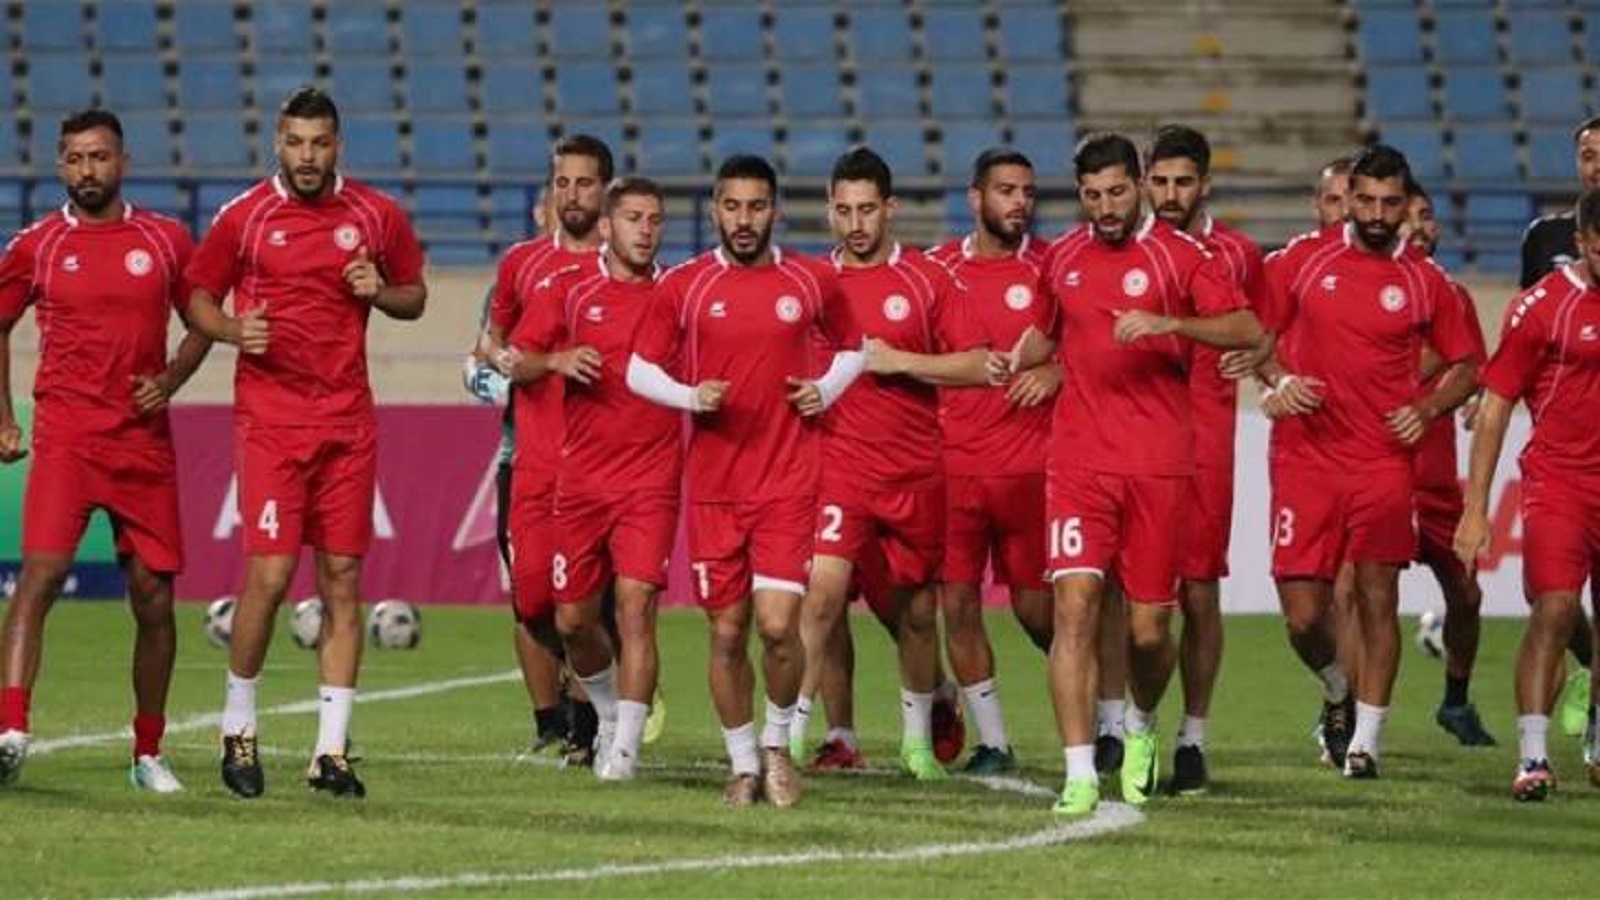 "تلفزيون لبنان" ينقل مباراة المنتخب اللبناني في كأس آسيا